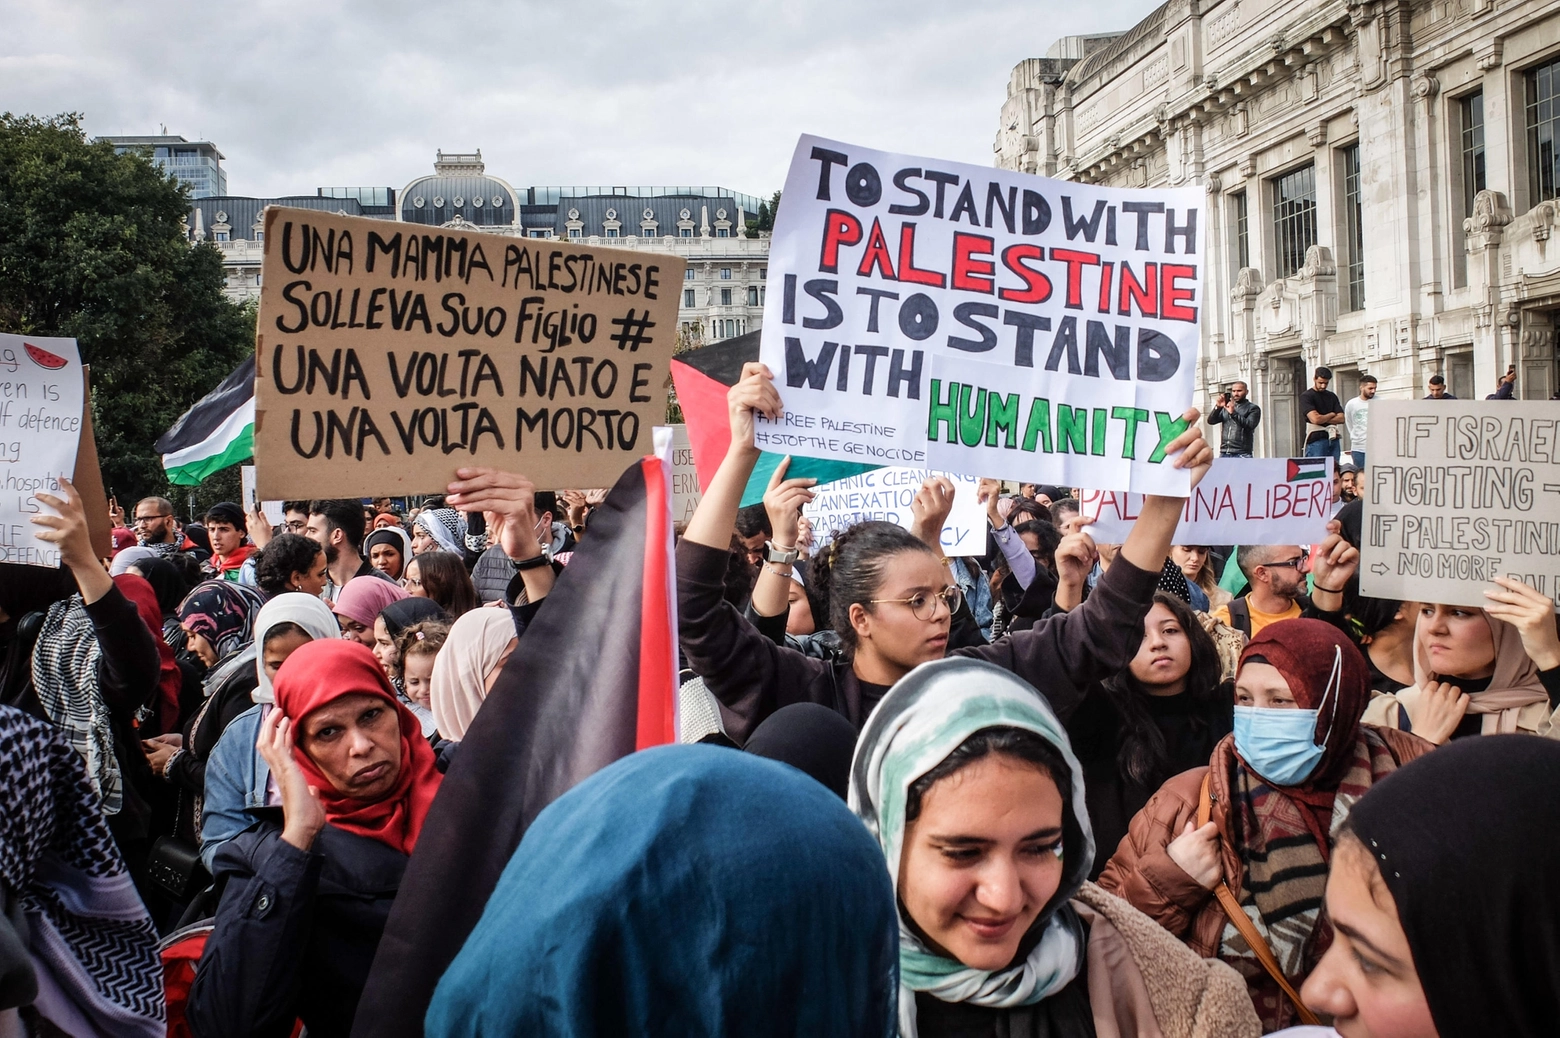 Un momento della manifestazione per la Palestina in piazza Duca d’Aosta, Milano 21 ottobre 2023.
ANSA/MATTEO CORNER